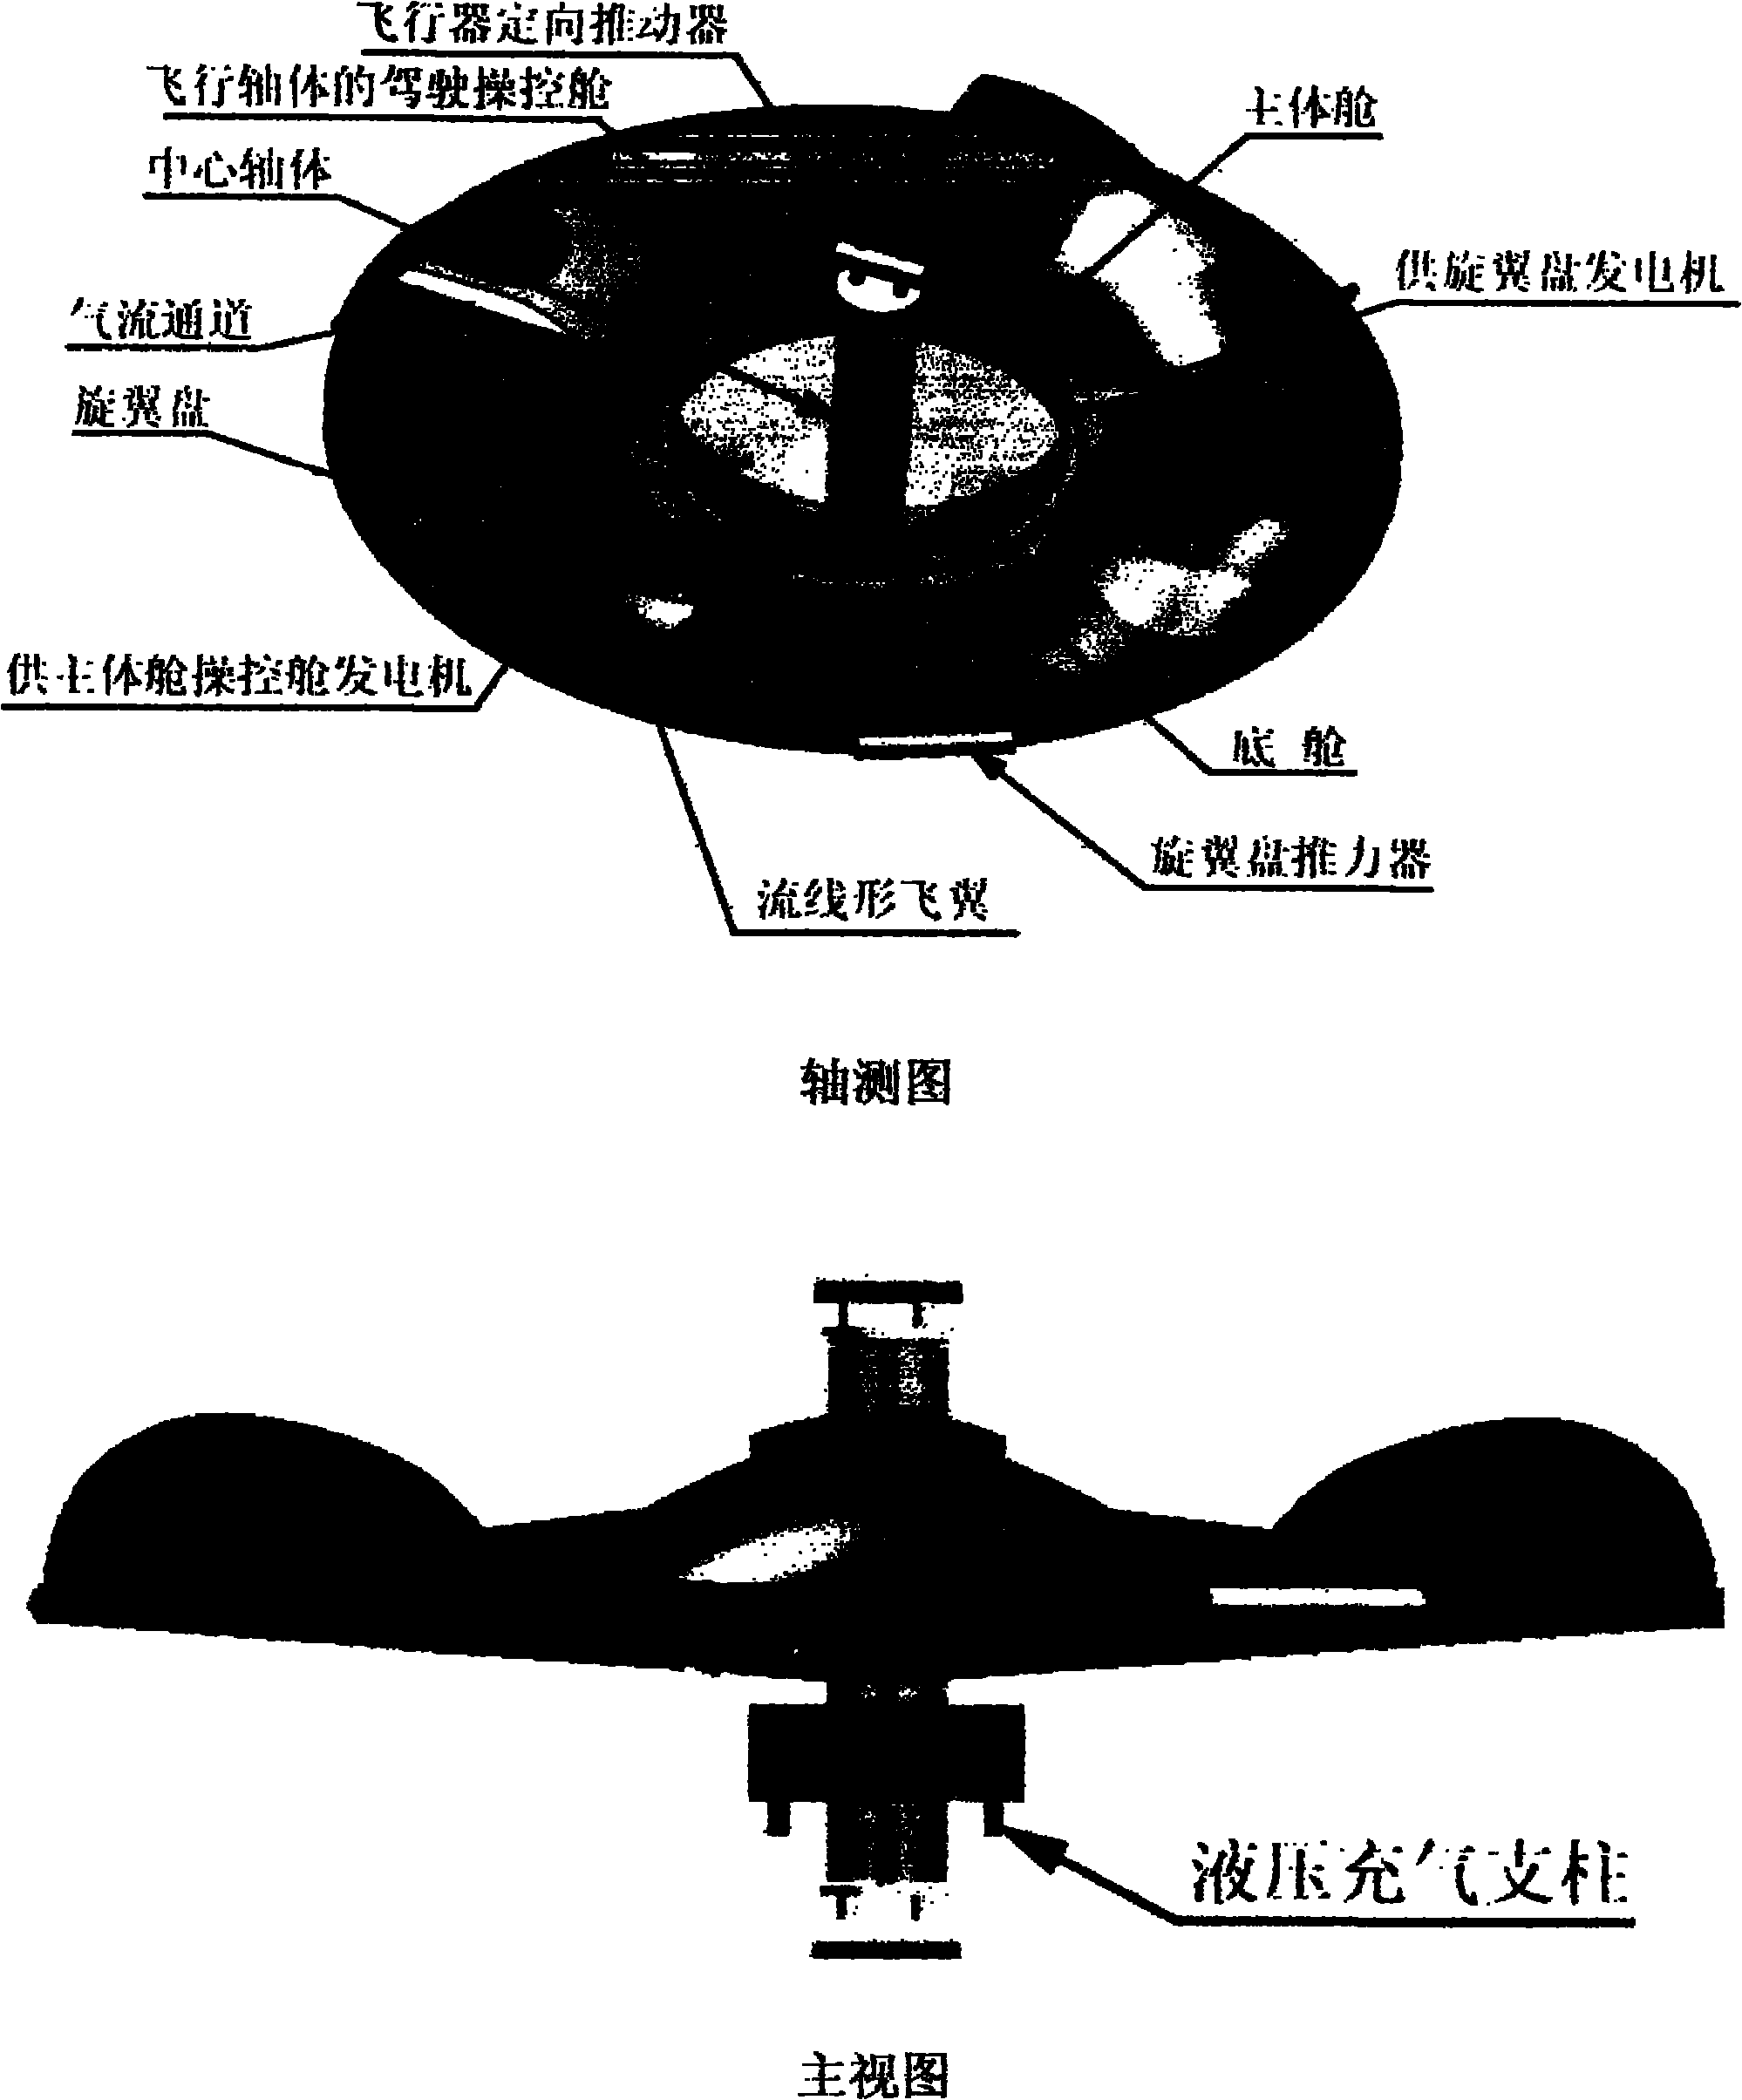 Rotor wing disk-shaped aviation aircraft